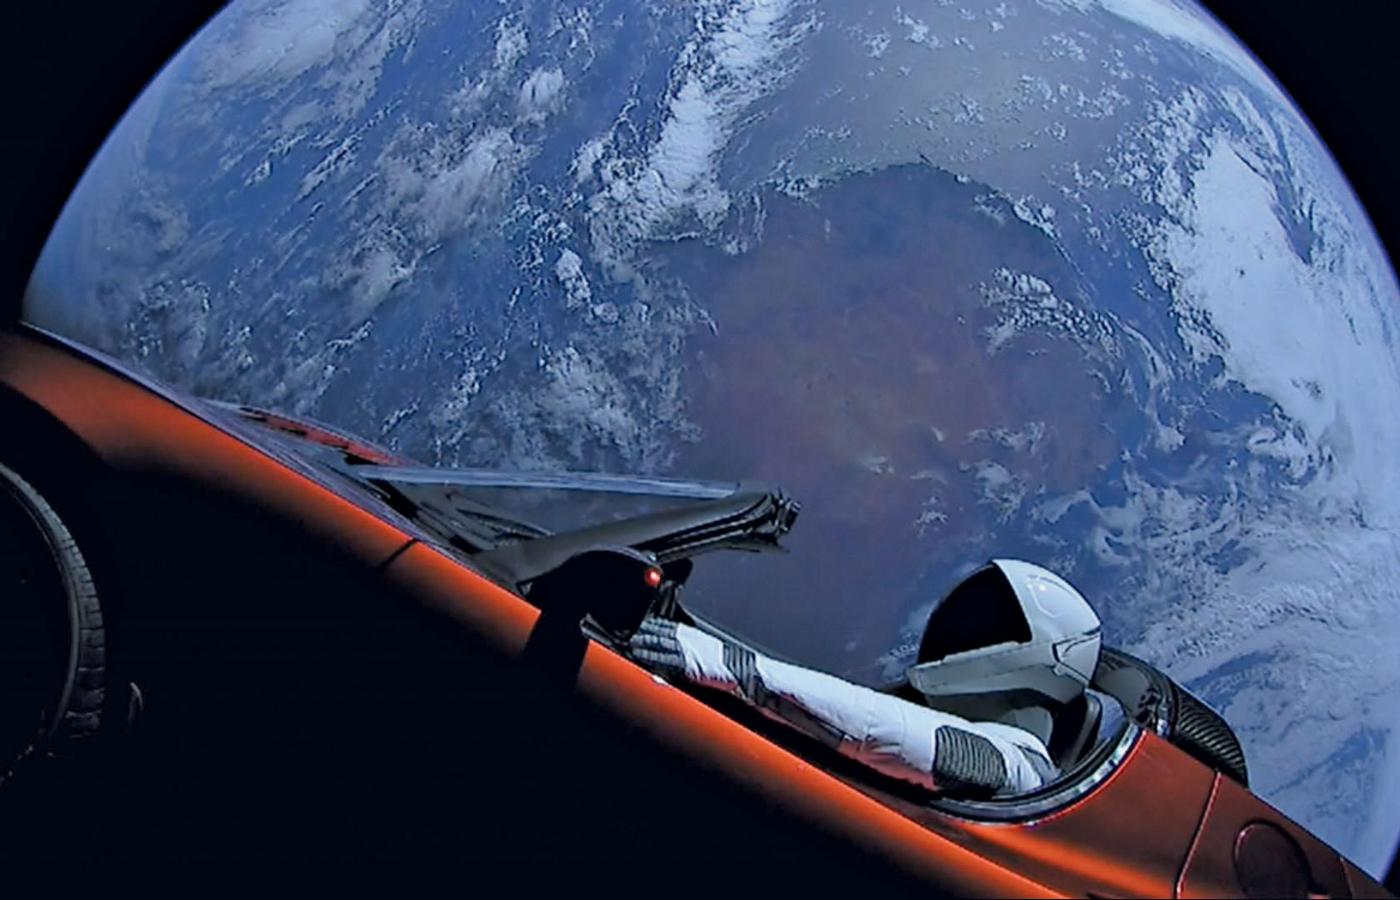 Od trzech lat po okołoziemskiej orbicie krąży czerwona Tesla Roadster, wysłana przez SpaceX. Za kierownicą siedzi „Starman” – manekin w stroju astronauty.